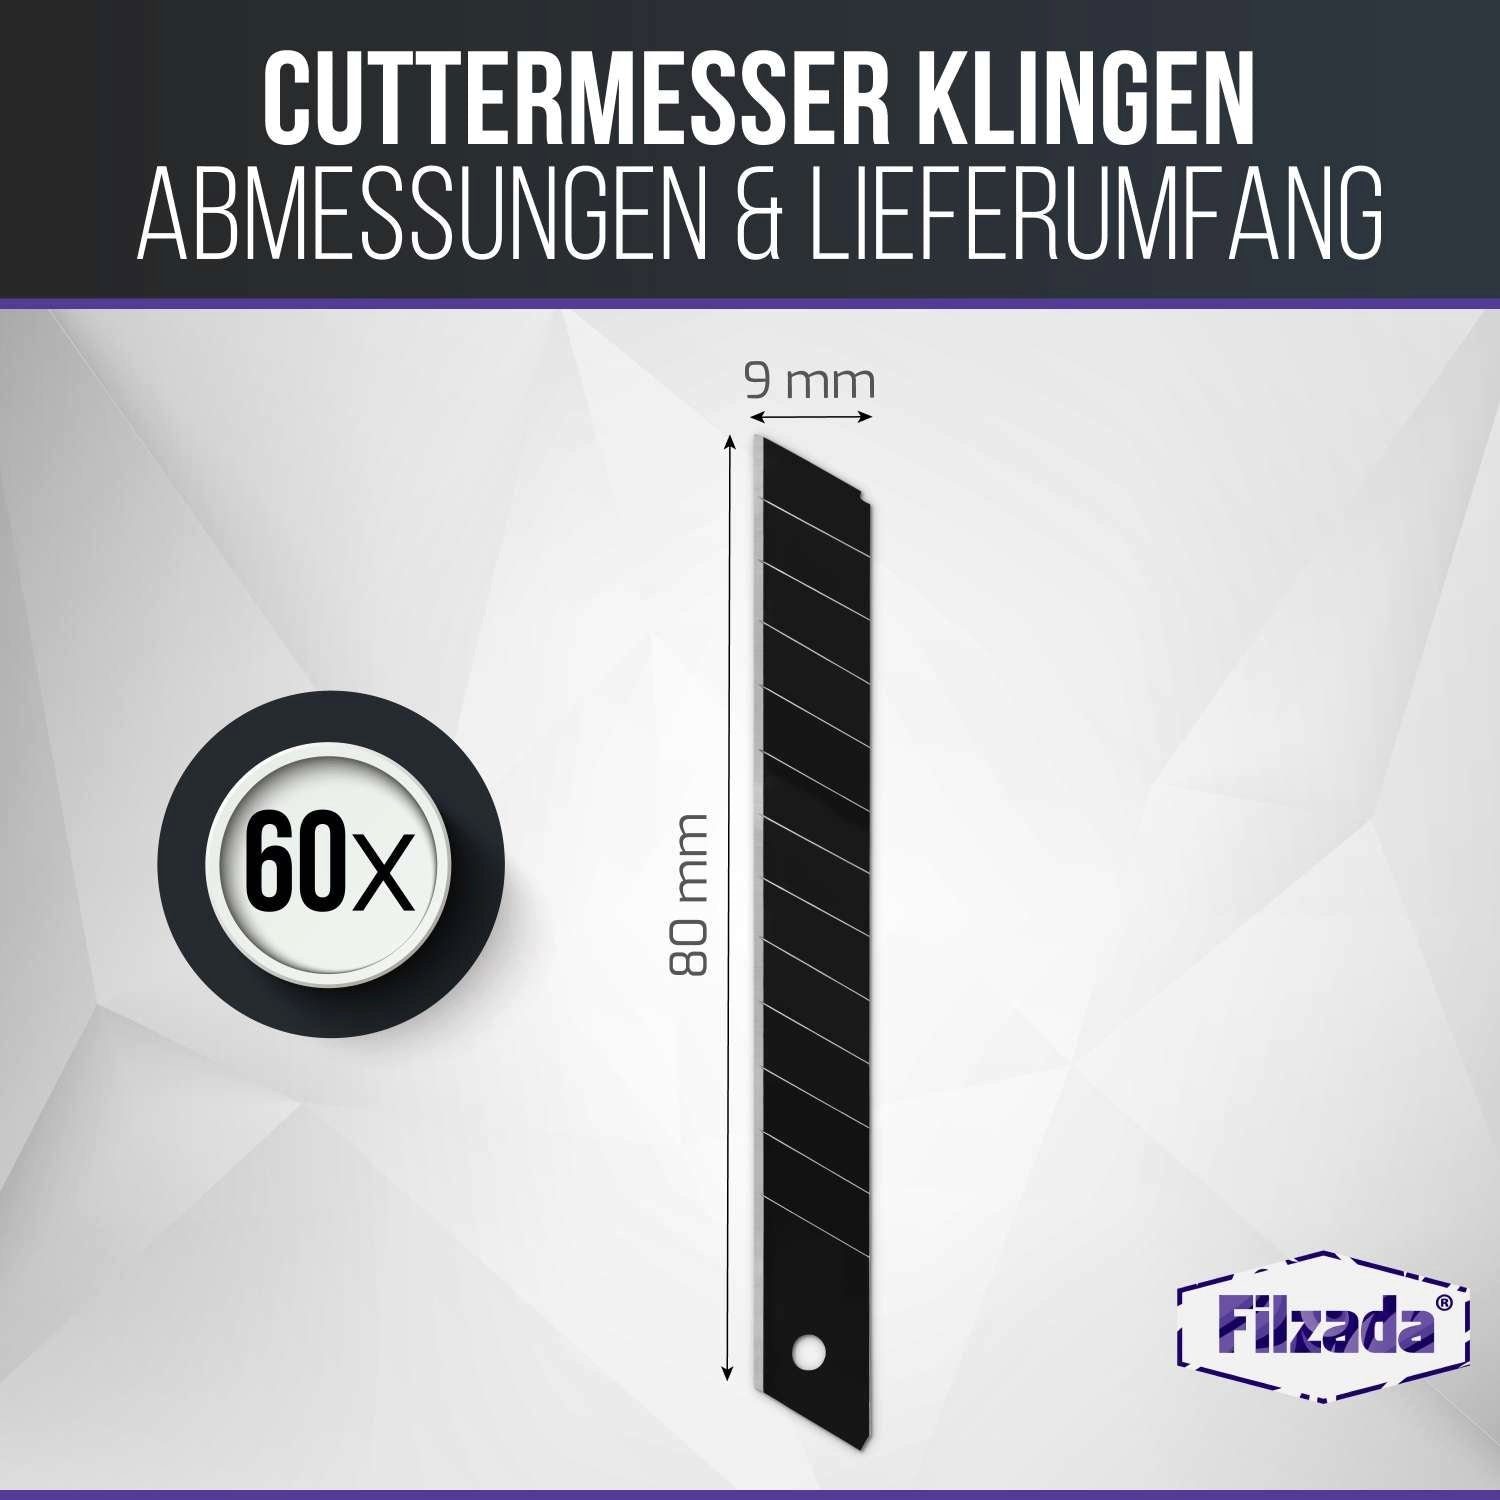 Filzada Cuttermesser 60x Cuttermesser Klingen Carbonstahl Cutterklingen Abbrechklingen 9mm